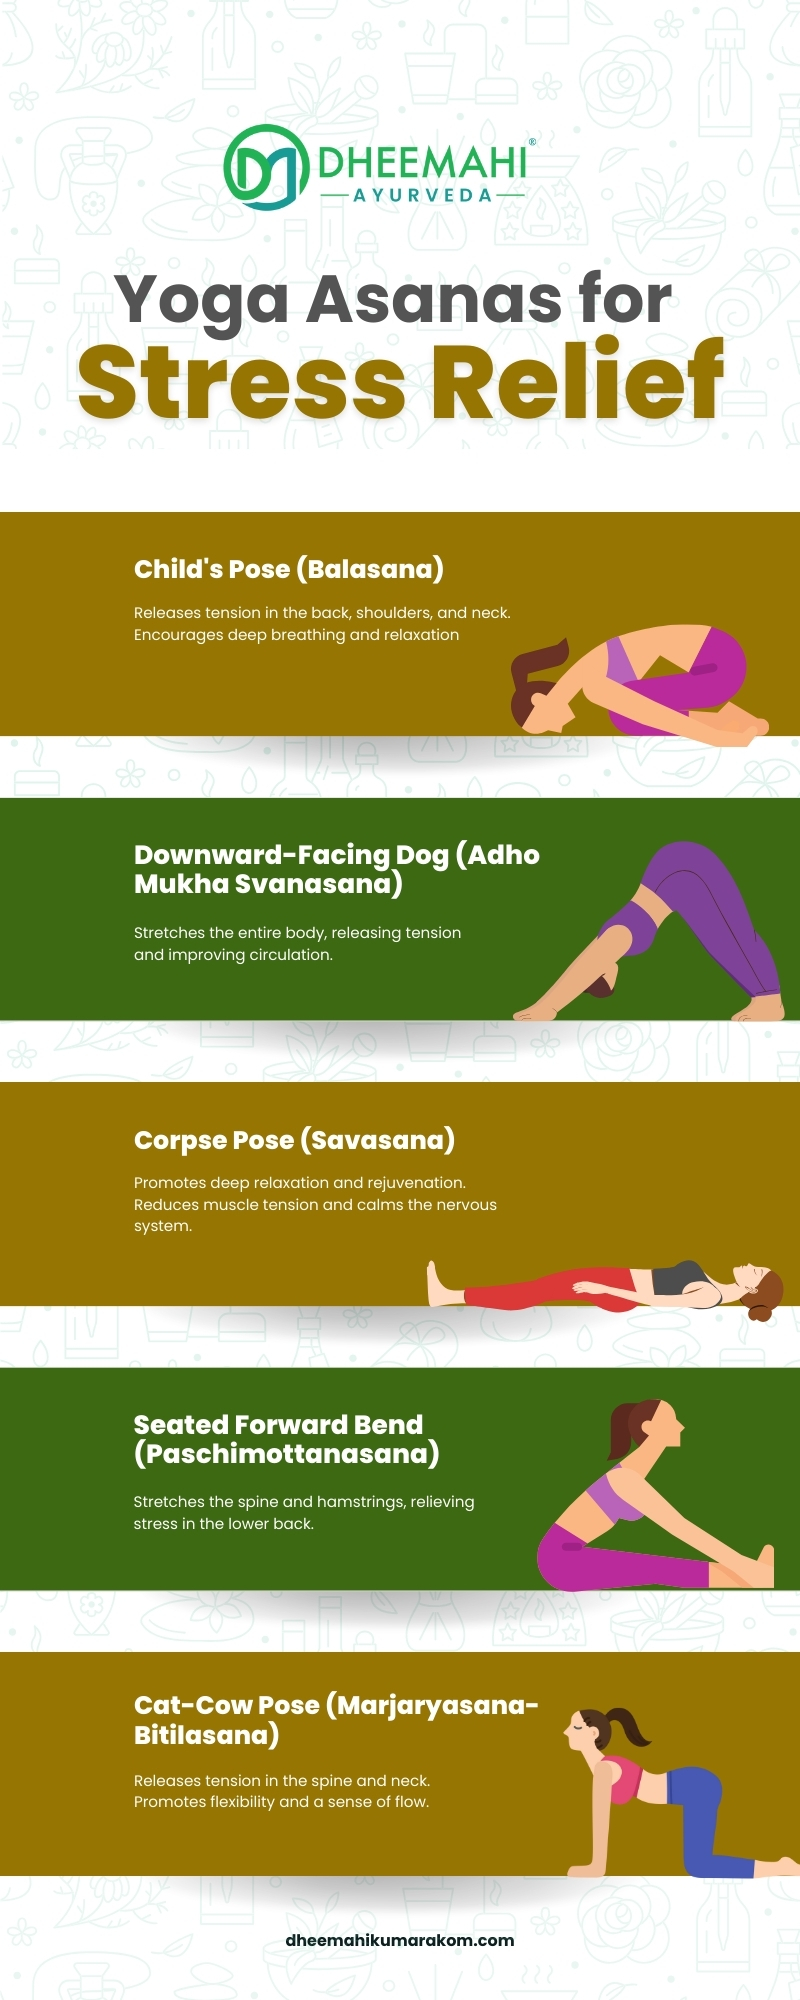 Yoga Asanas for Stress Relief